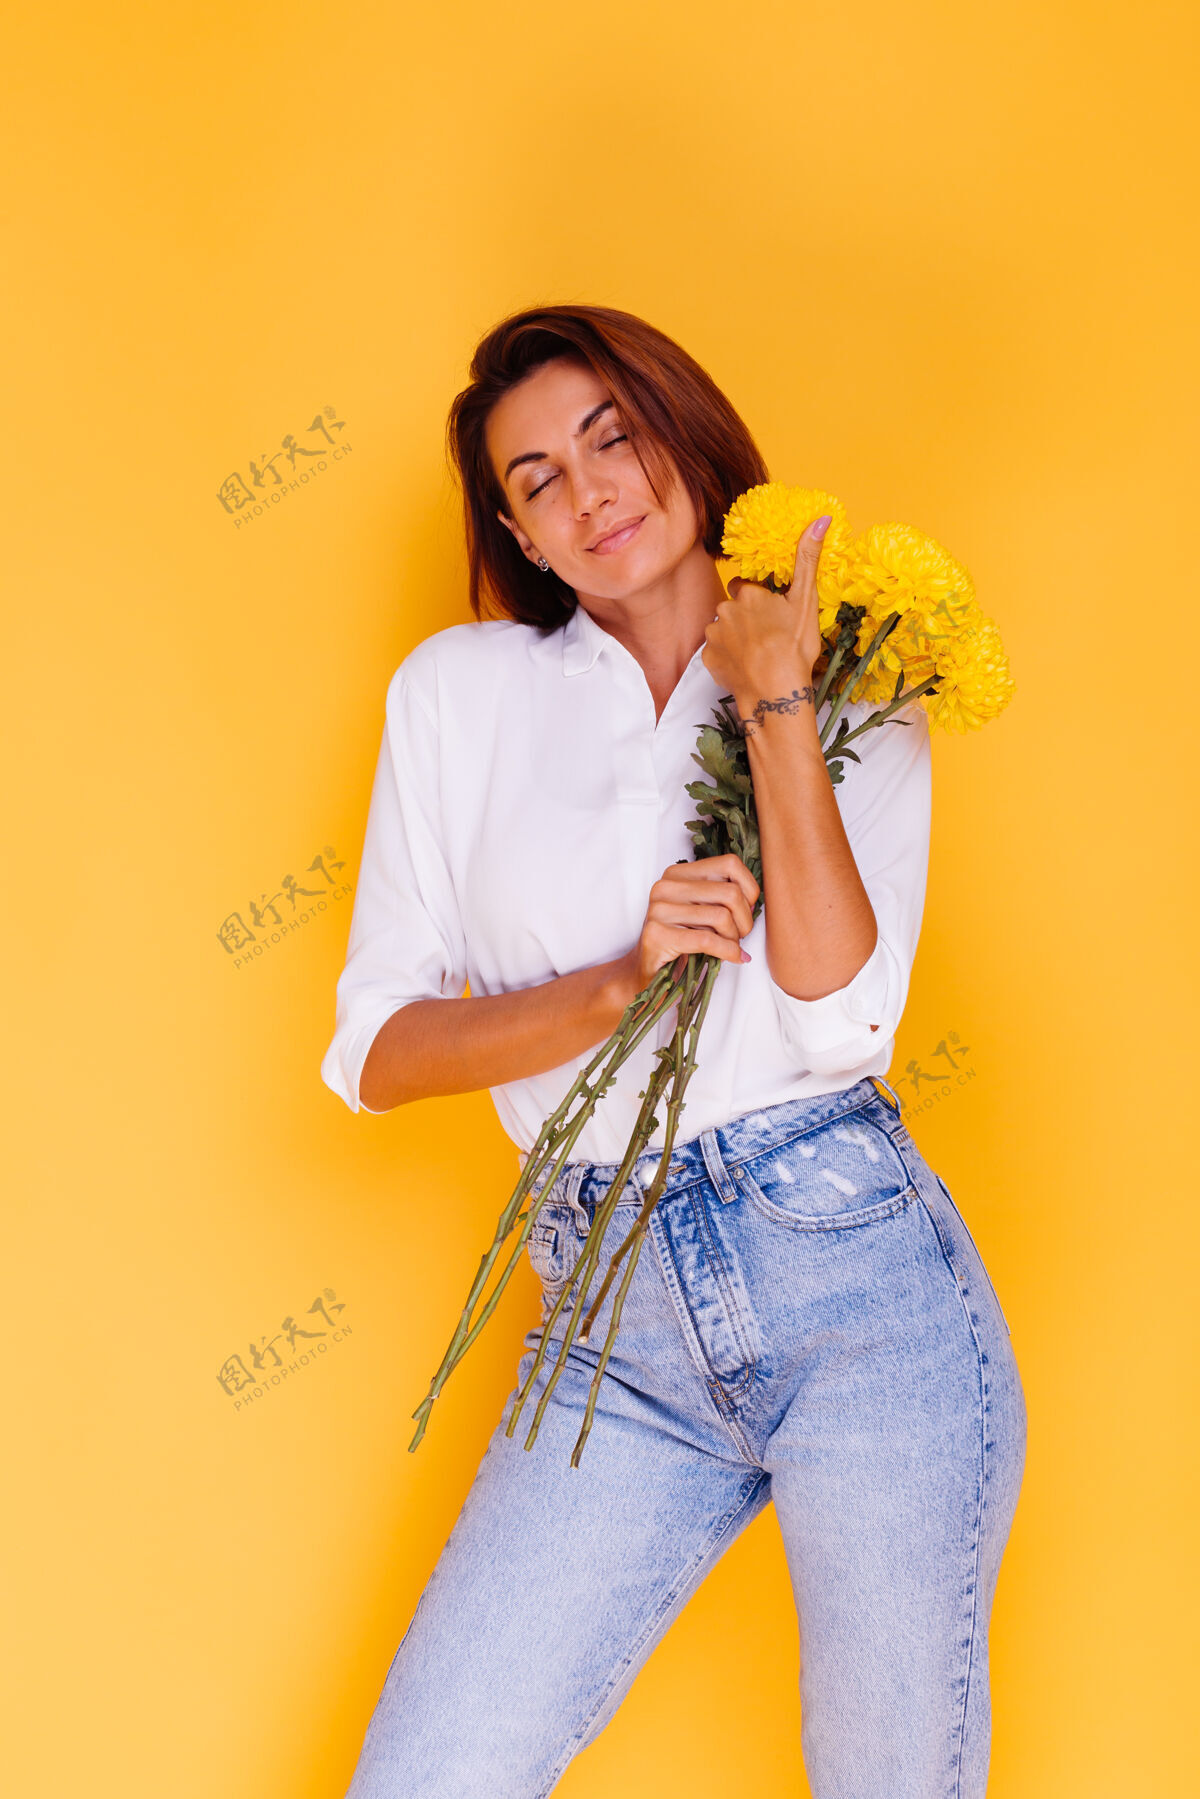 可爱摄影棚拍摄的黄色背景快乐的白人妇女短发穿着休闲服白衬衫和牛仔裤手持一束黄色紫苑微笑年轻惊喜